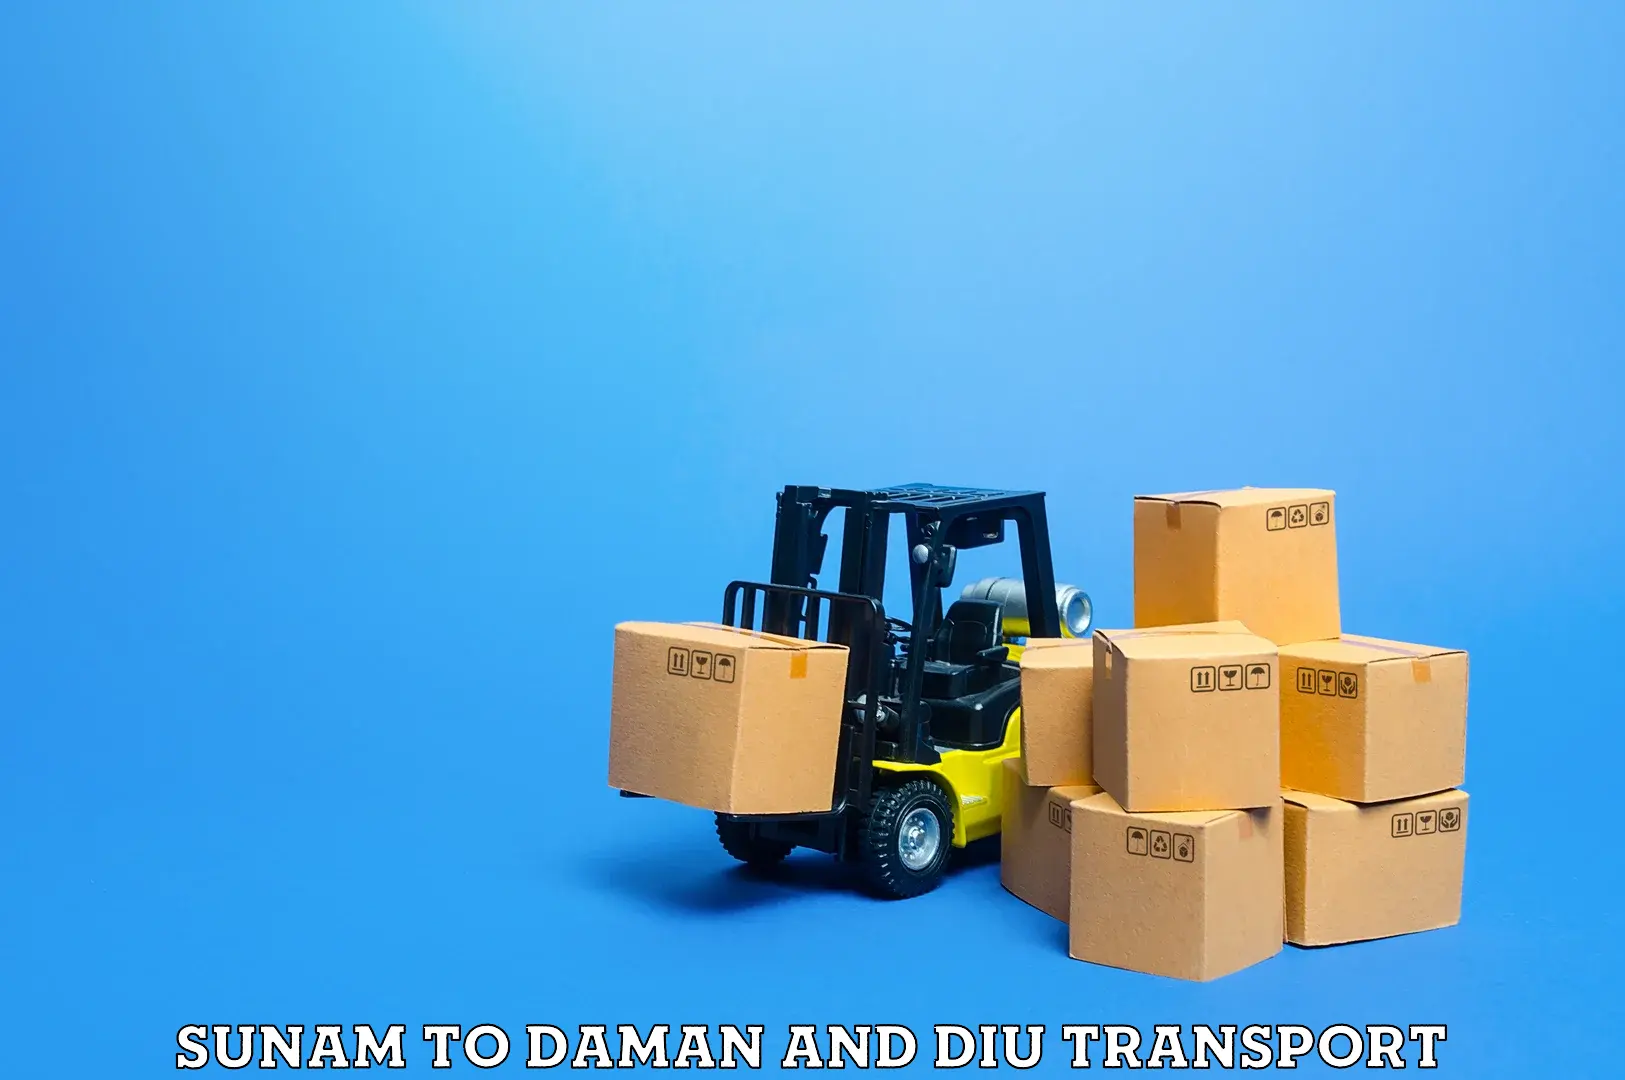 Daily transport service Sunam to Diu